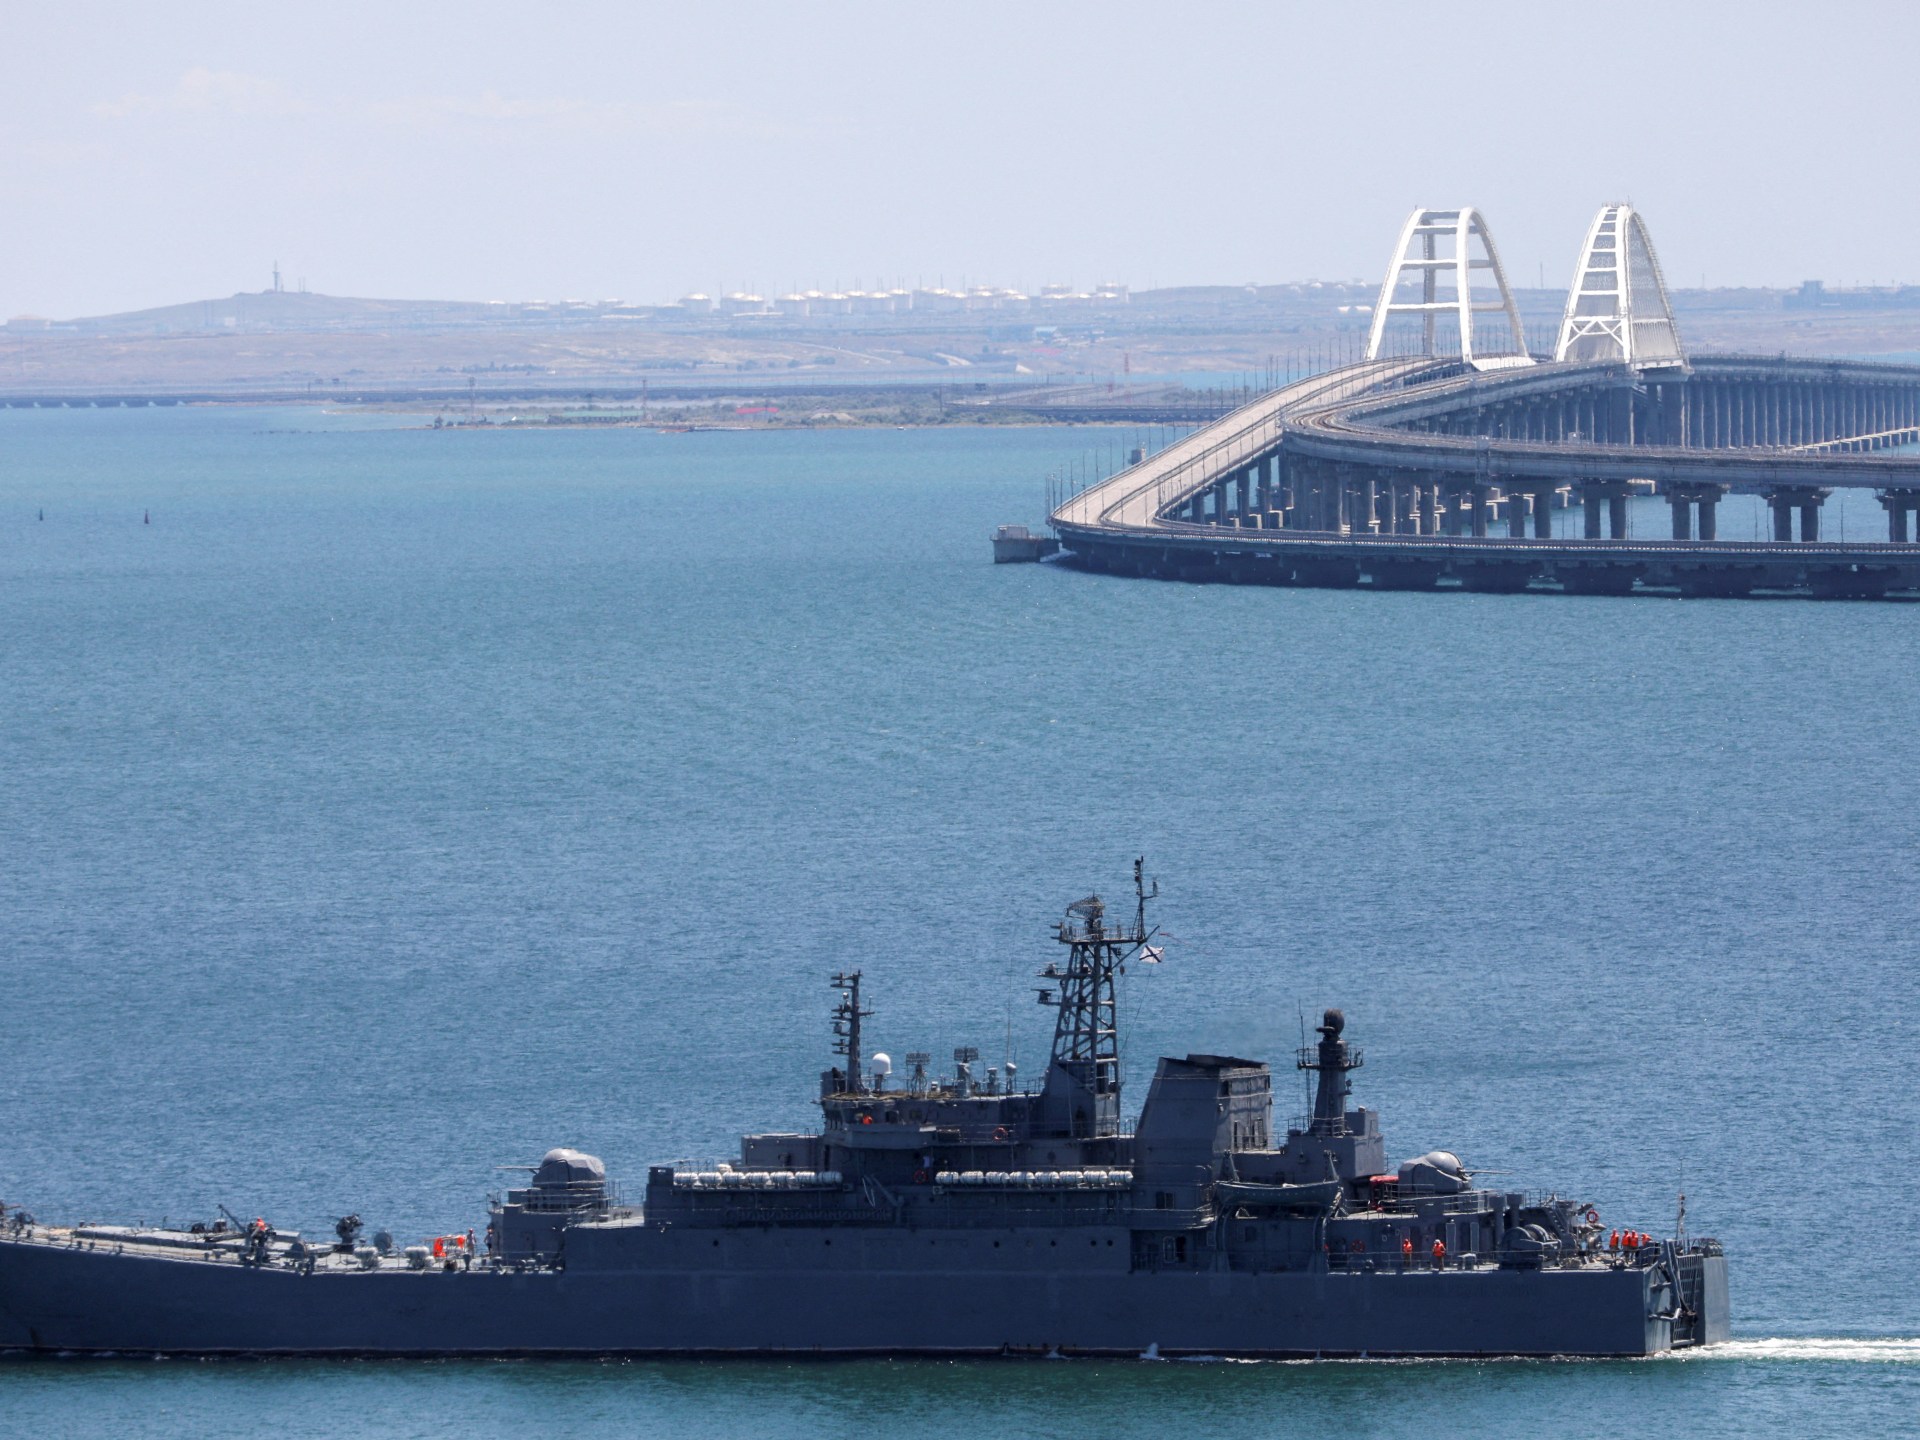 الجيش الأوكراني يزعم أنه ضرب حوض بناء السفن زاليف في شبه جزيرة القرم التي ضمتها روسيا |  الحرب بين روسيا وأوكرانيا